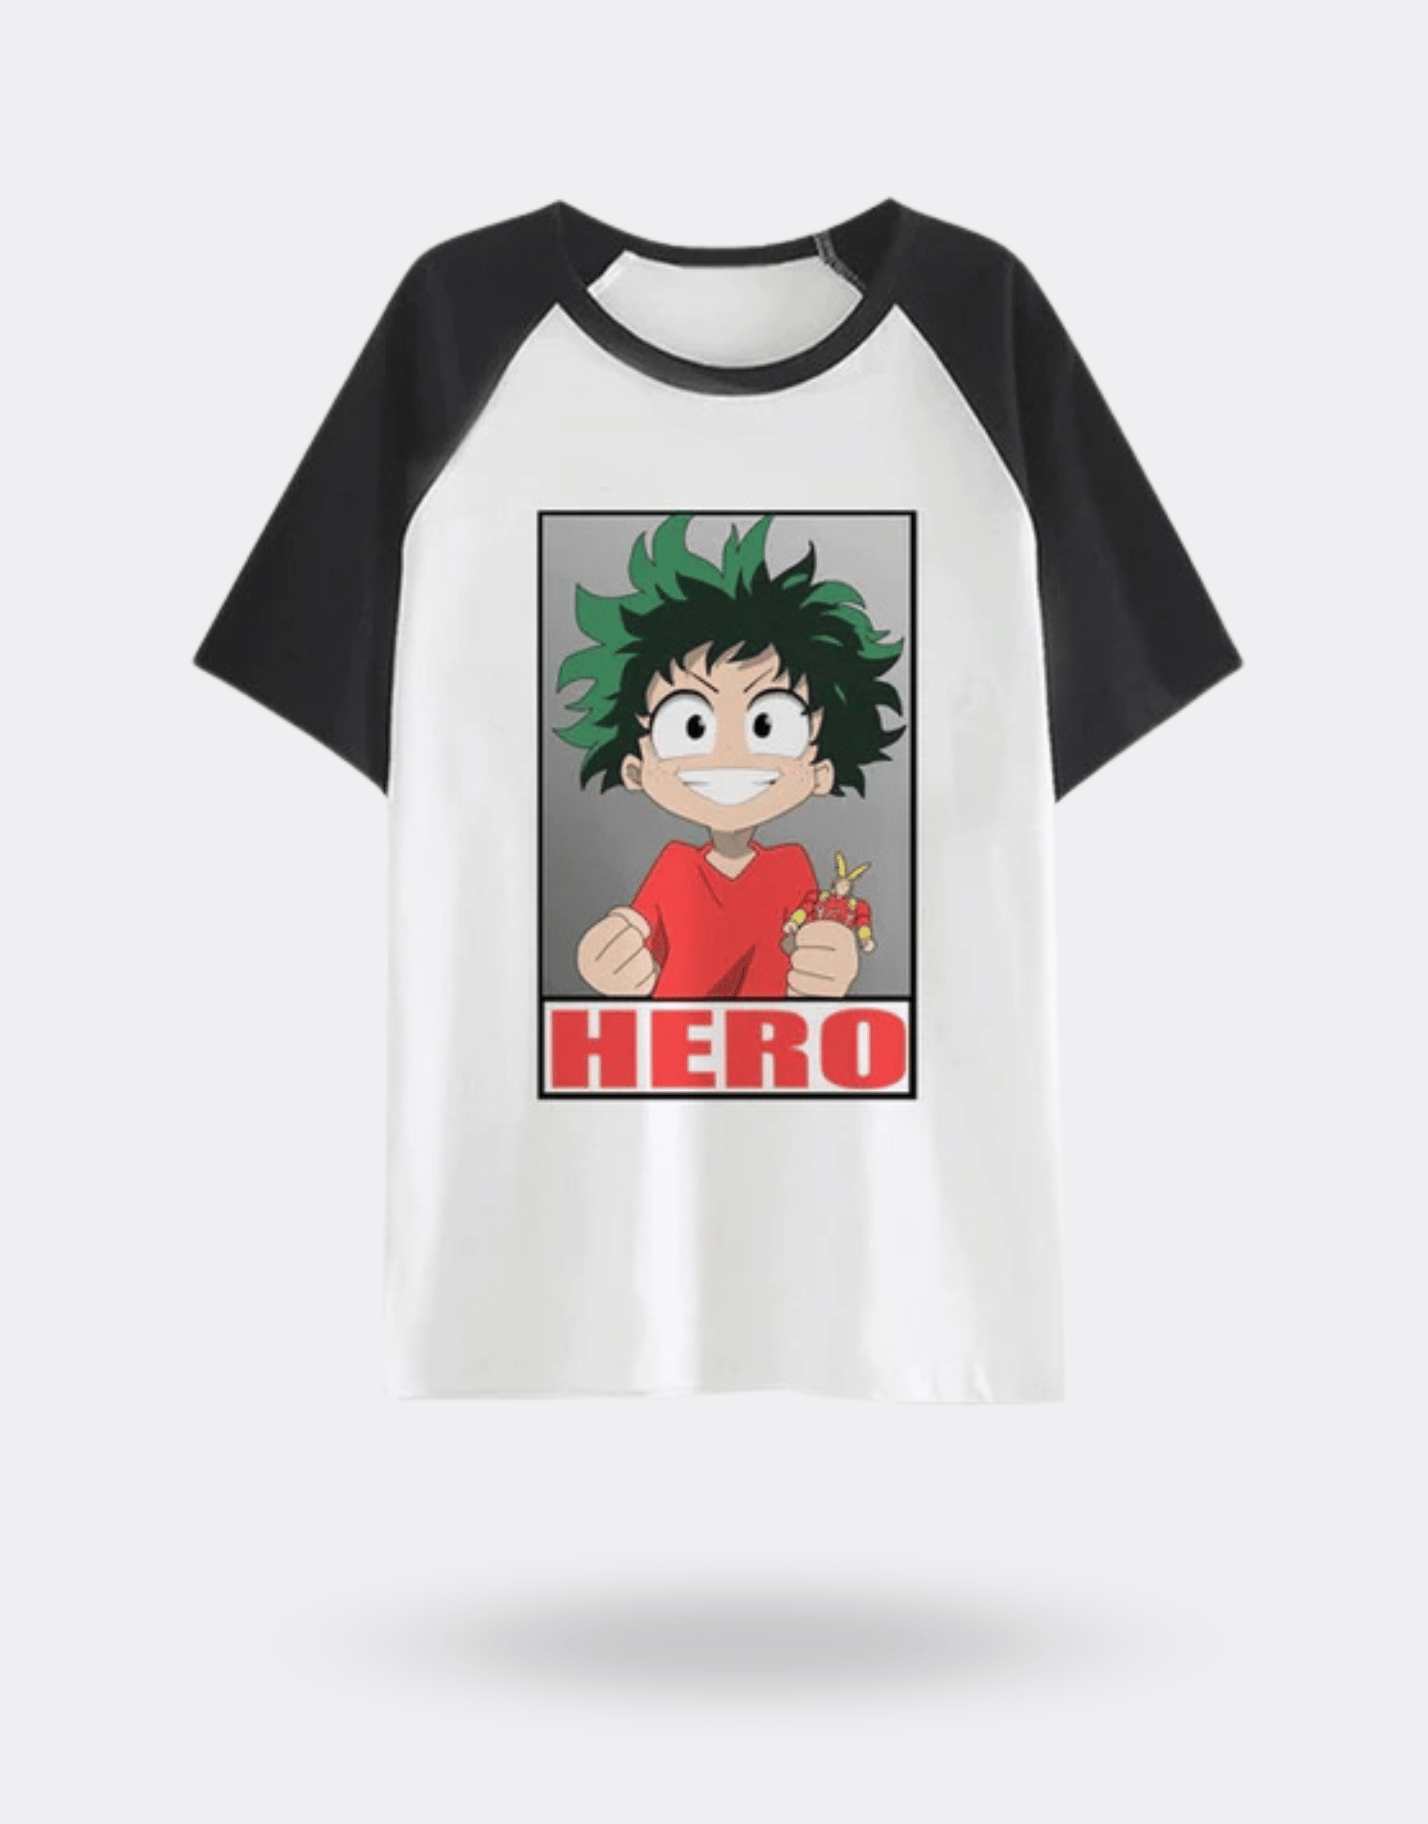 T-shirt Manga Deku chibi  My Hero Academia